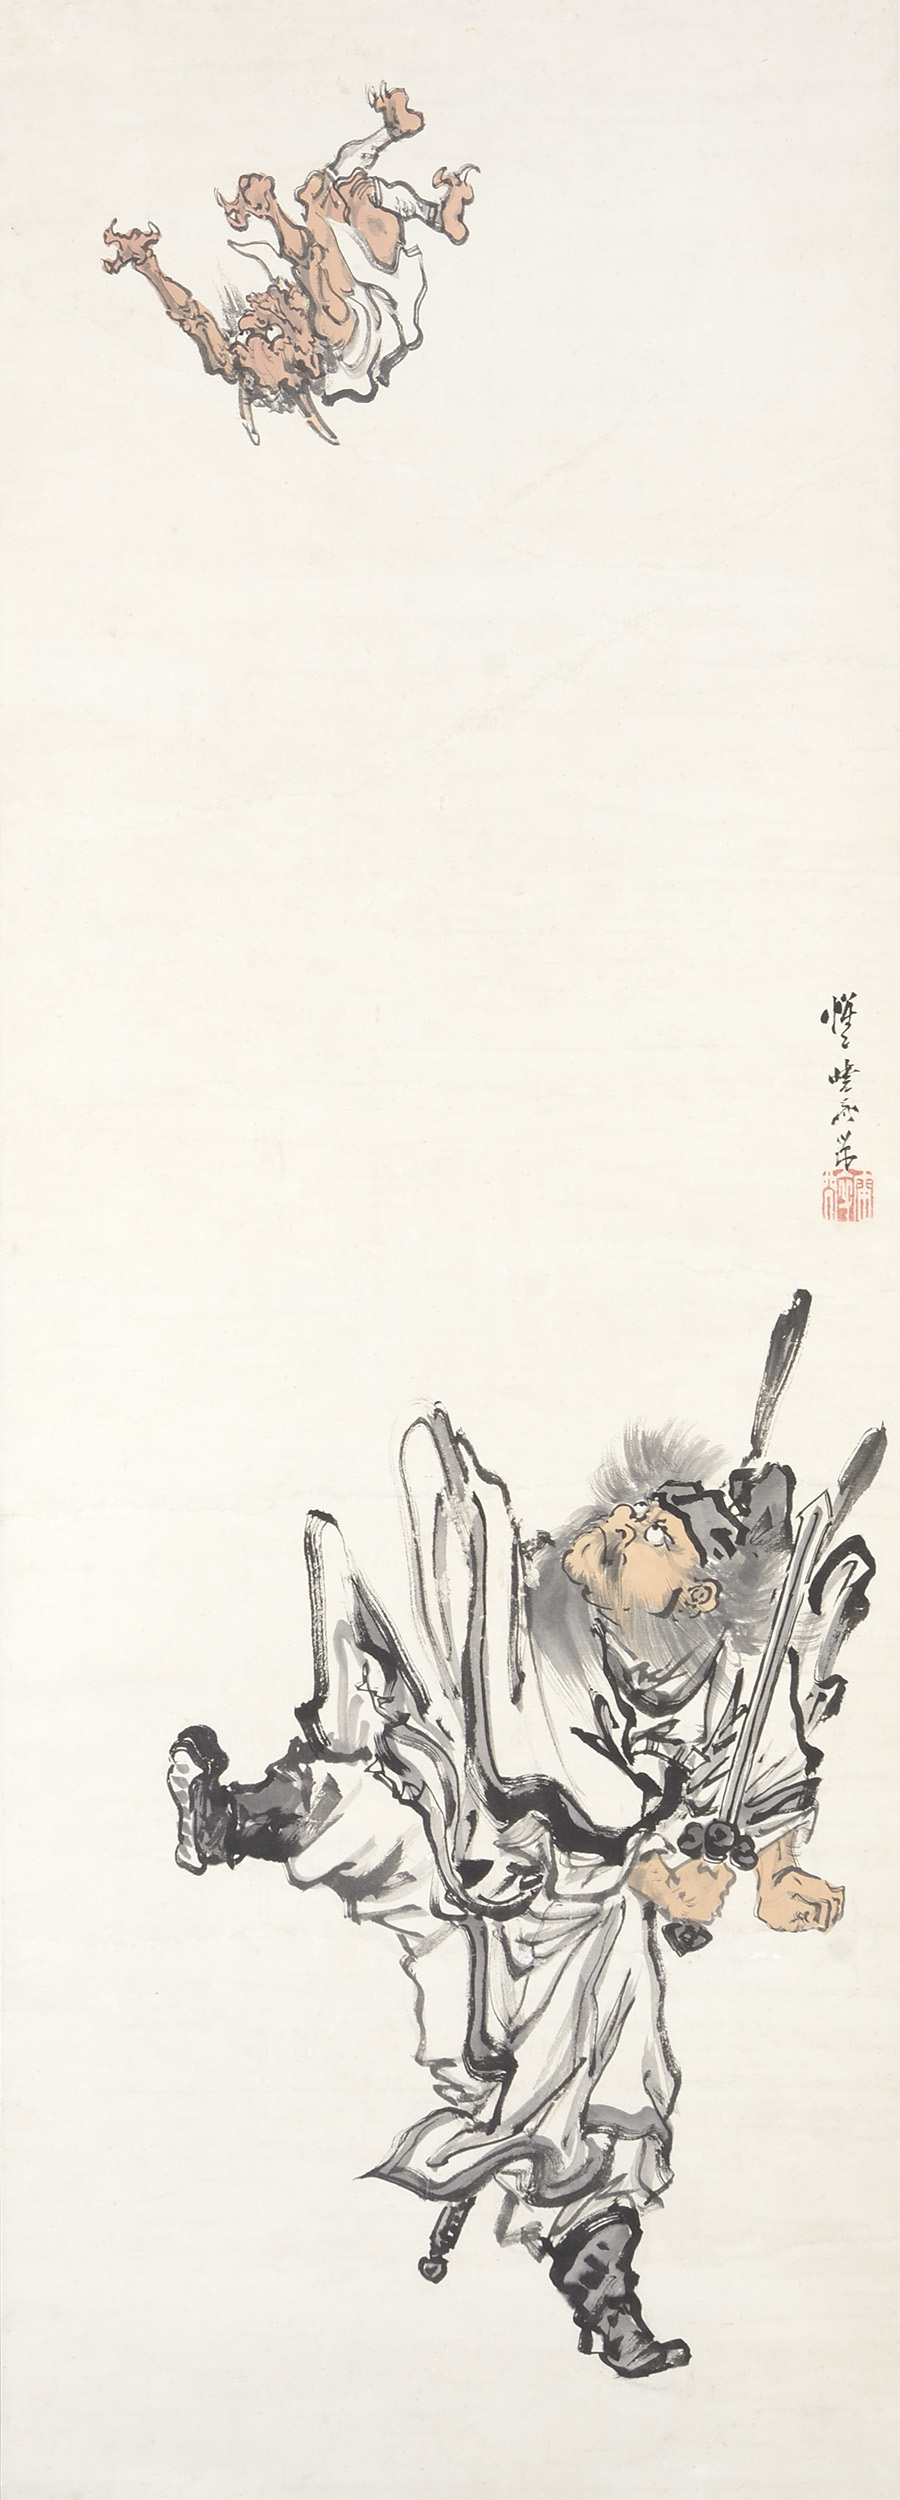 河鍋暁斎 《鬼を蹴り上げる鍾馗》 明治4-22(1871-89) 紙本着彩